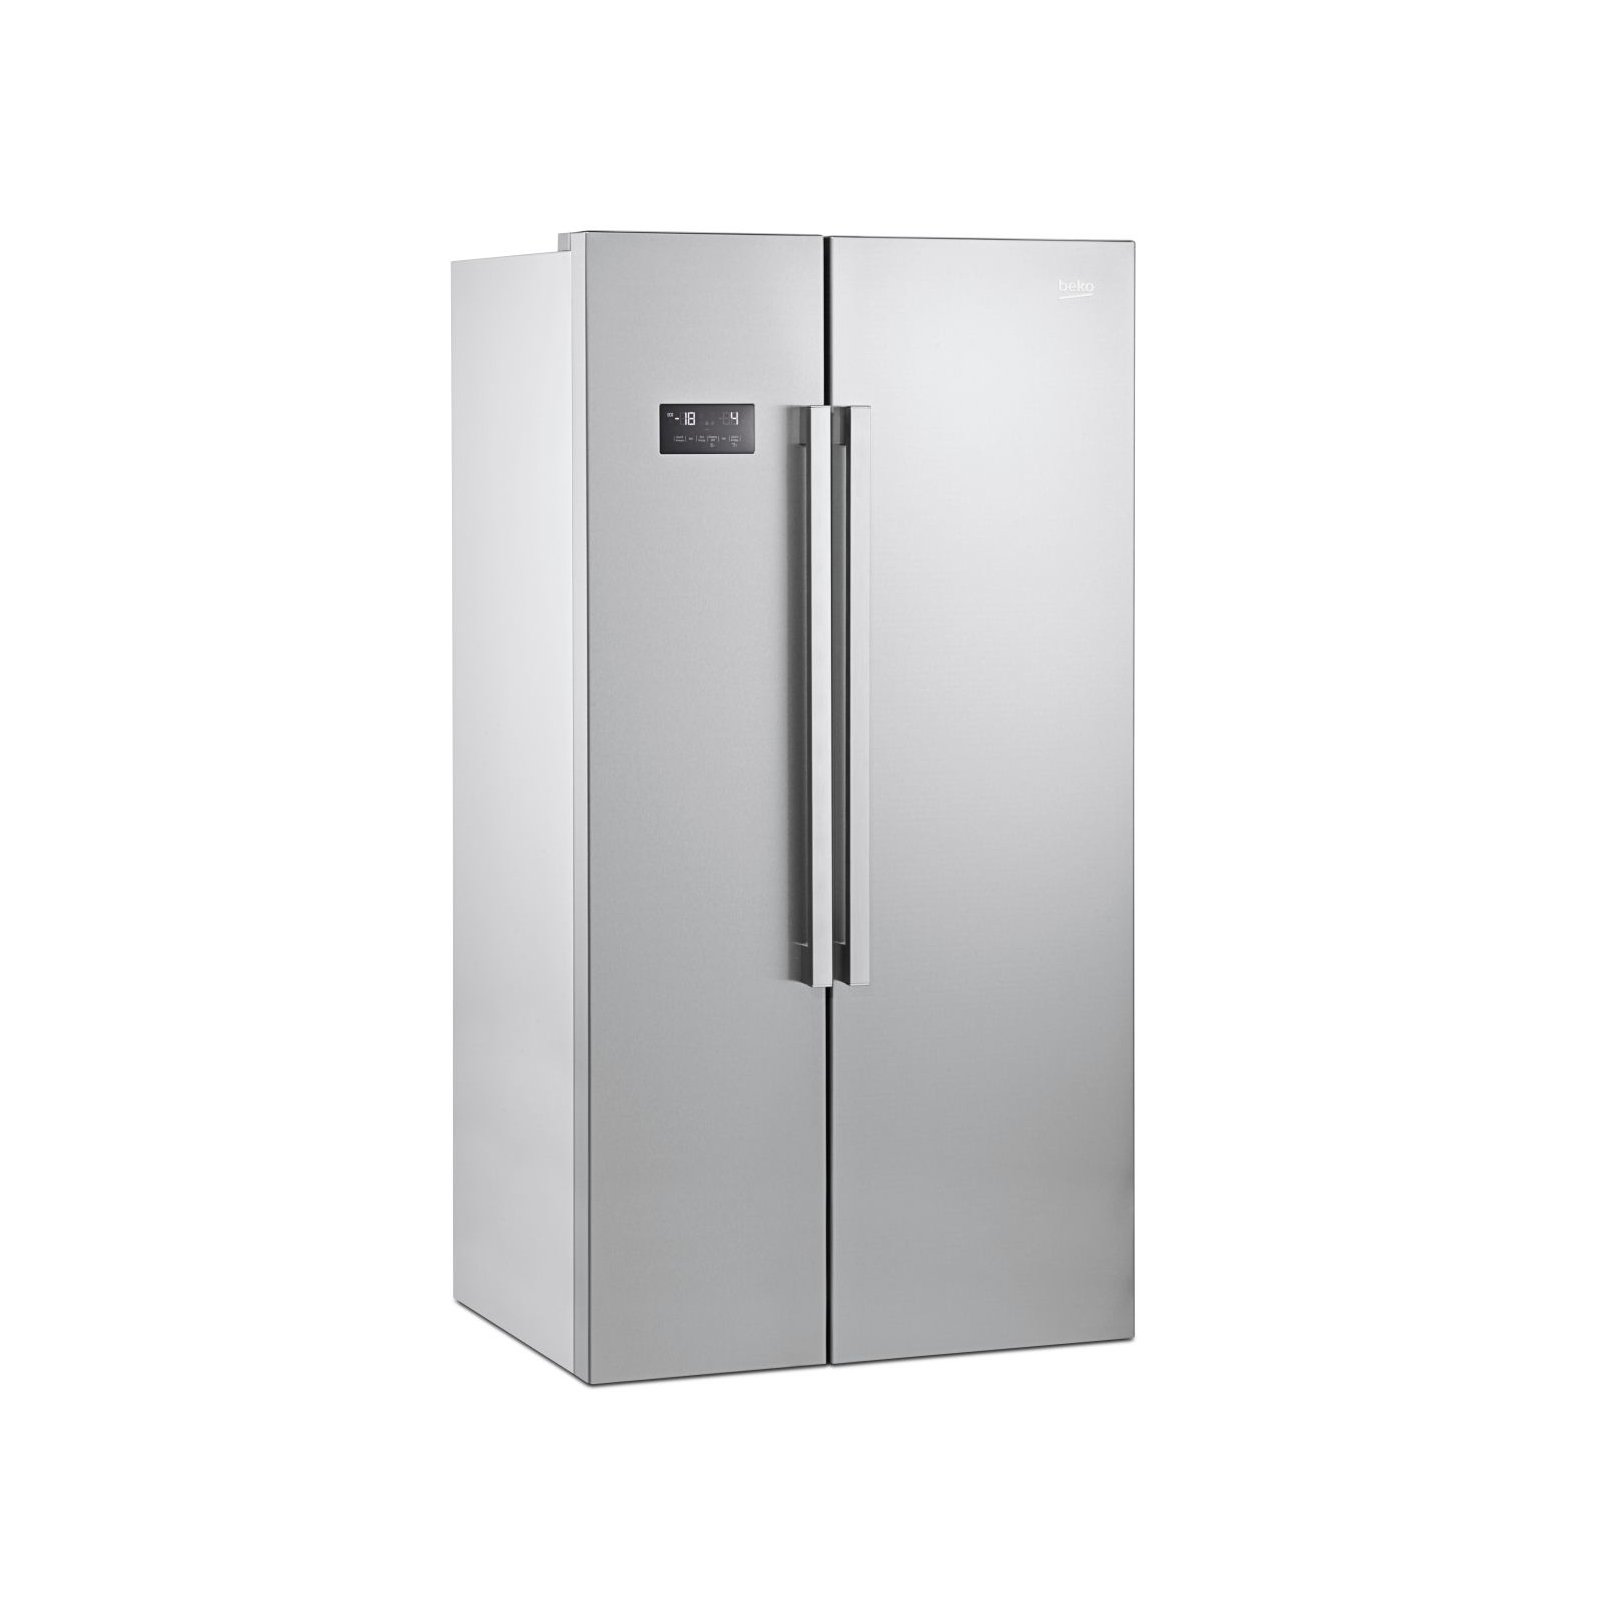 Холодильник Beko GN163120X изображение 2